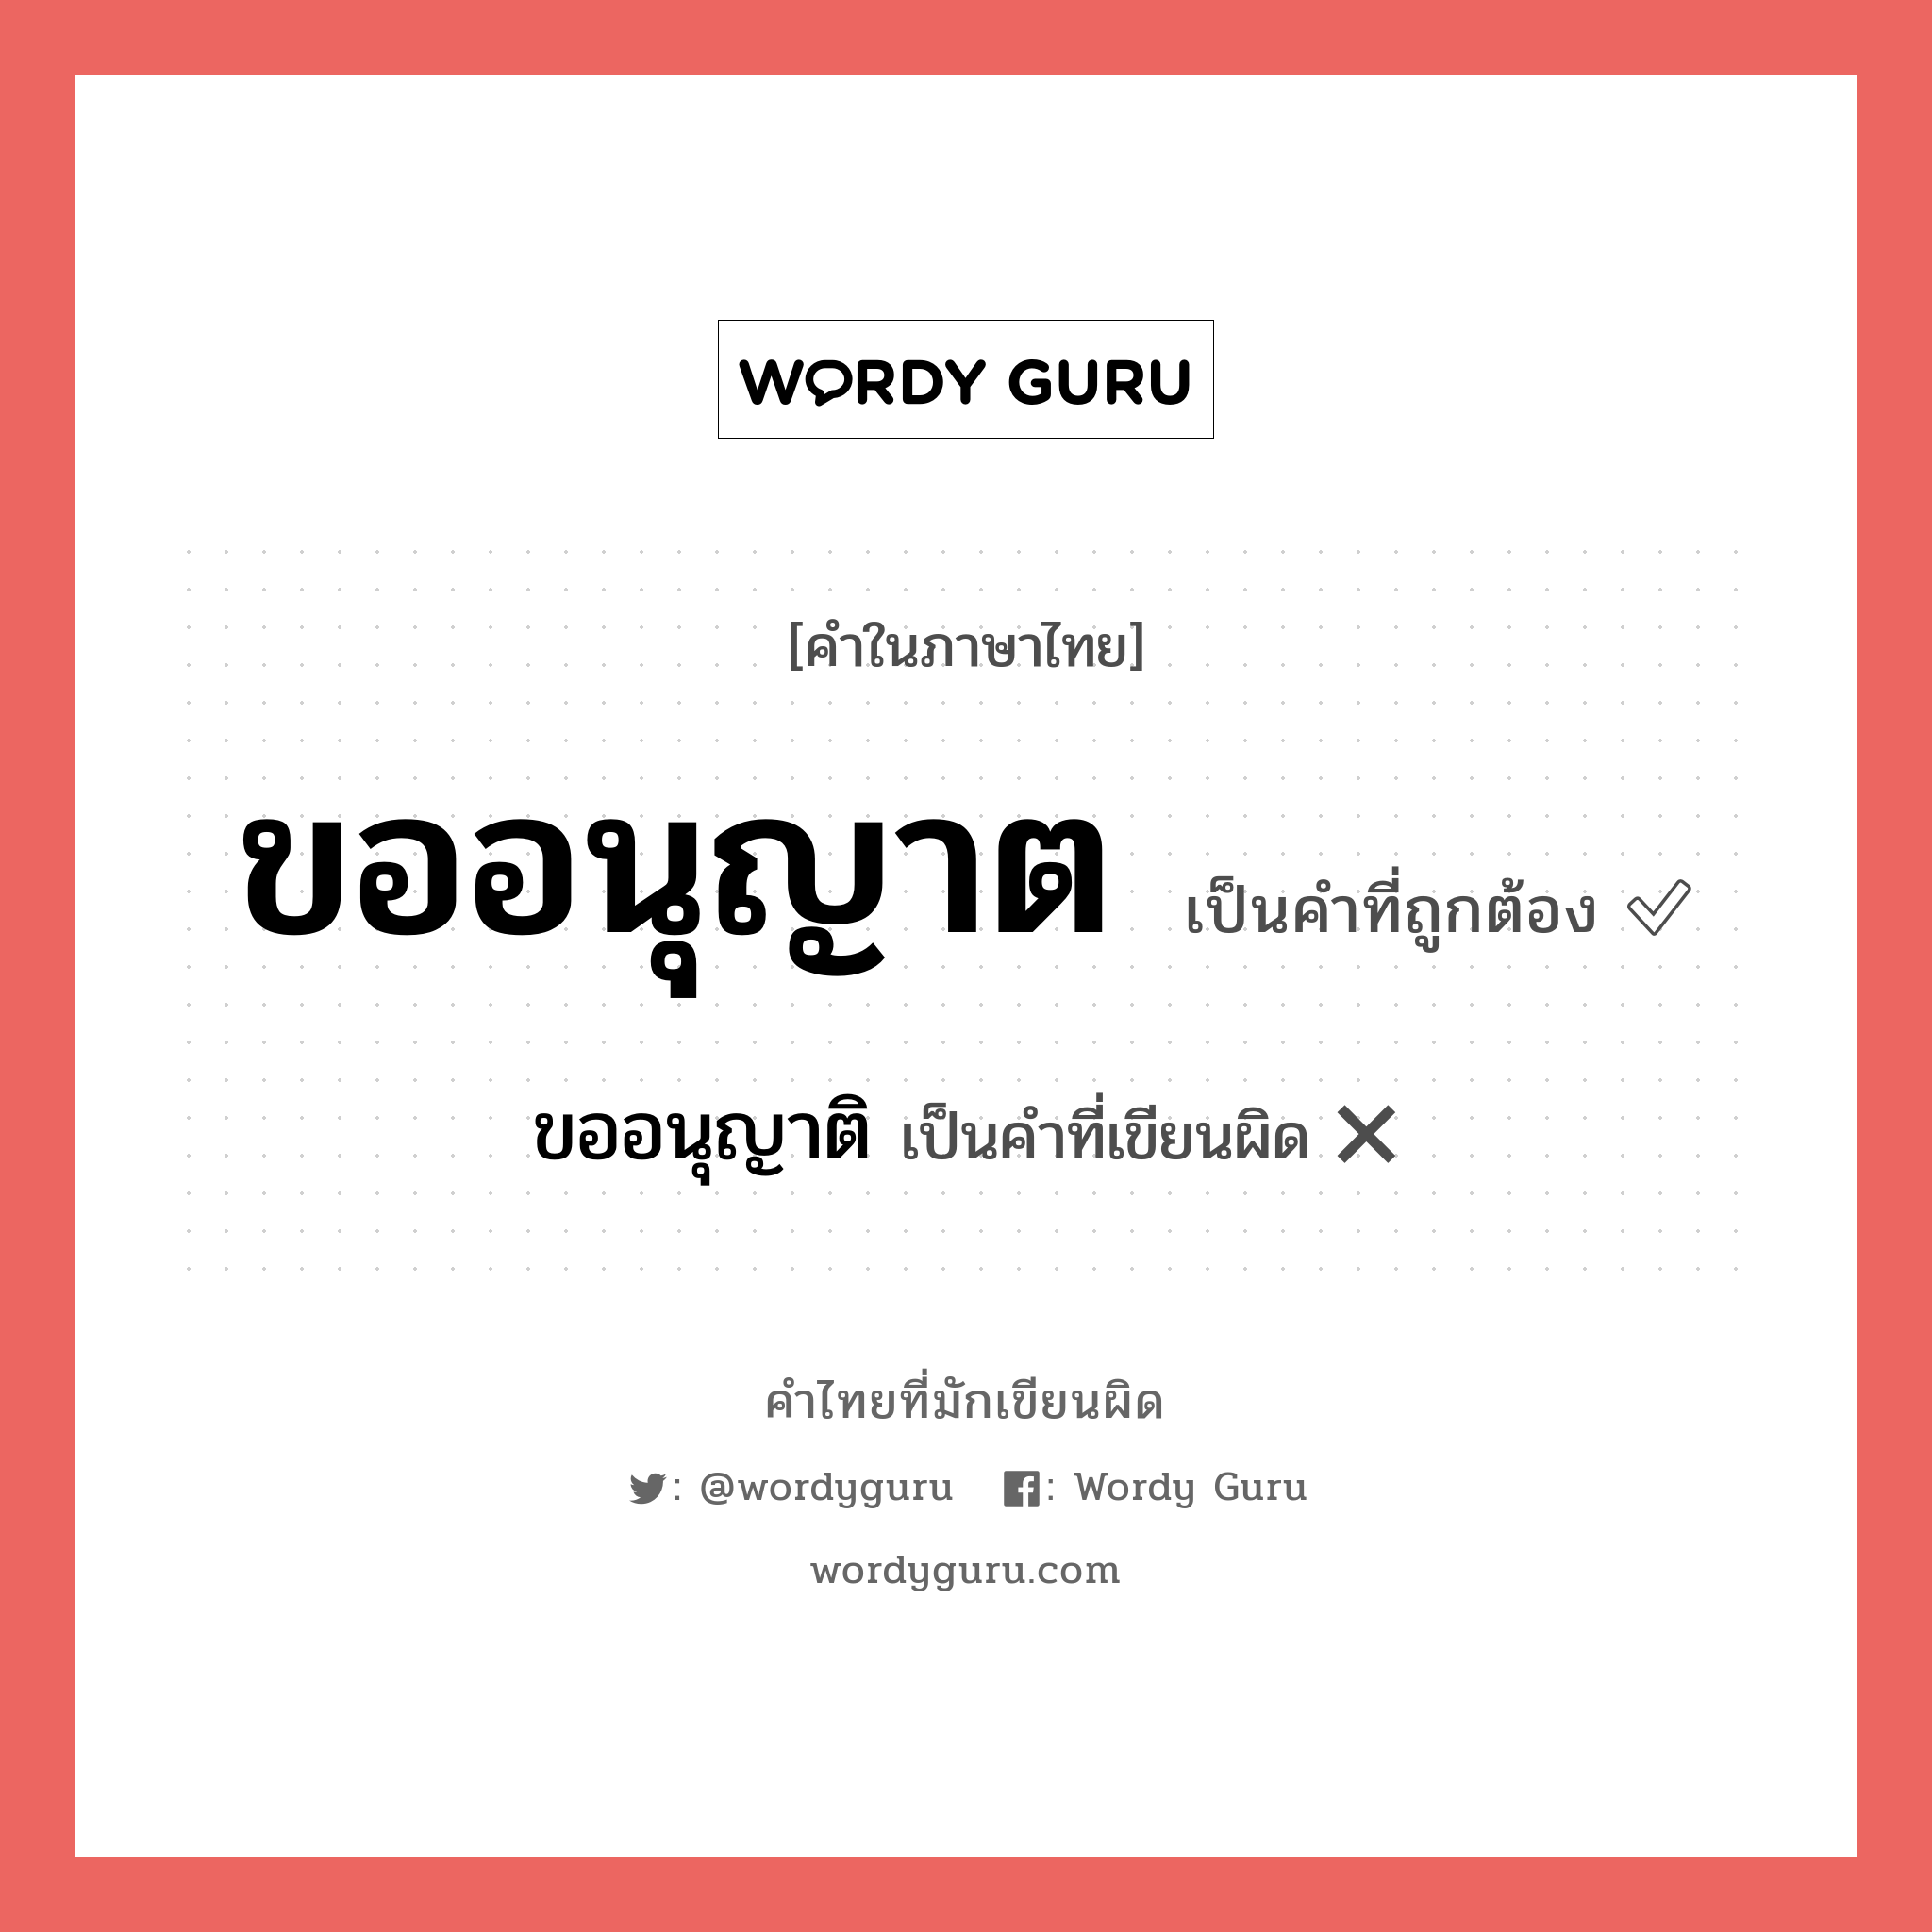 ขออนุญาติ หรือ ขออนุญาต คำไหนเขียนถูก?, คำในภาษาไทยที่มักเขียนผิด ขออนุญาติ คำที่ผิด ❌ ขออนุญาต